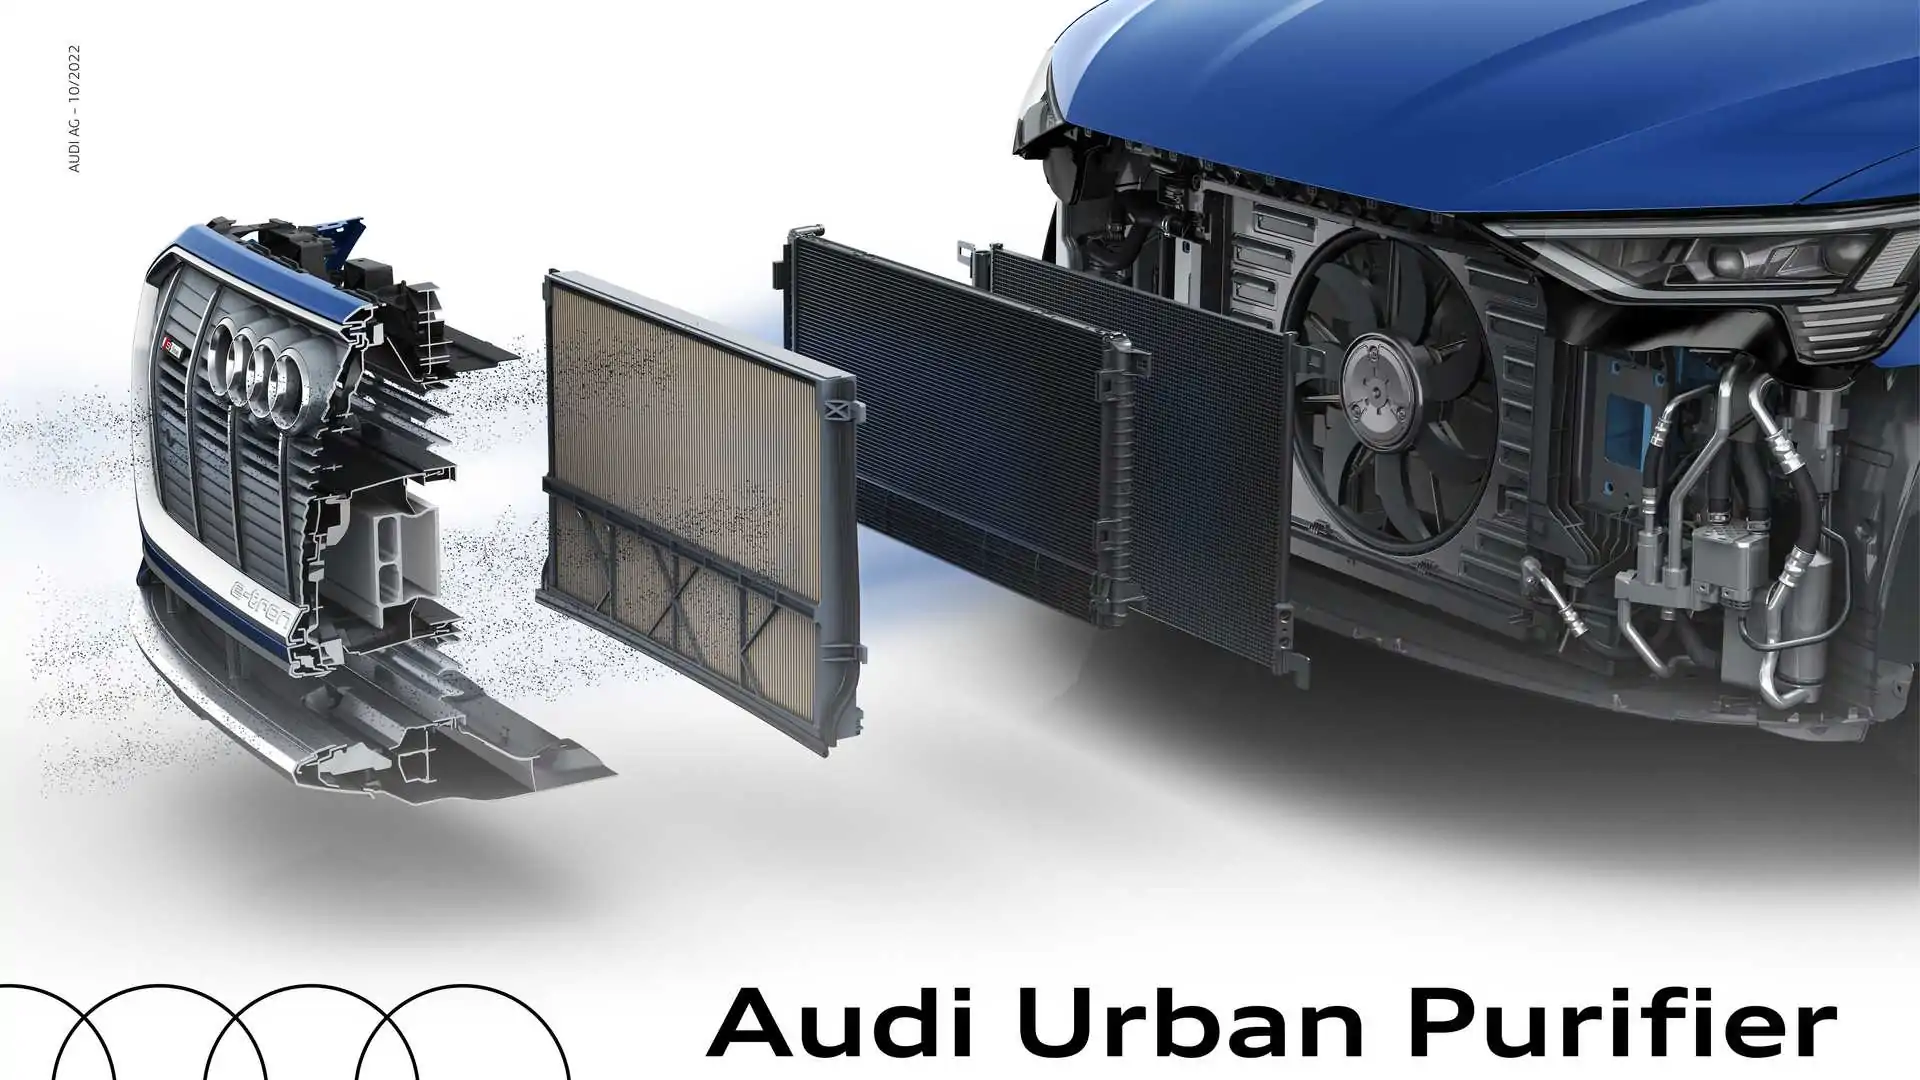 Una speciale Audi e-tron che cattura lo smog, ecco l’Audi Urban Purifier